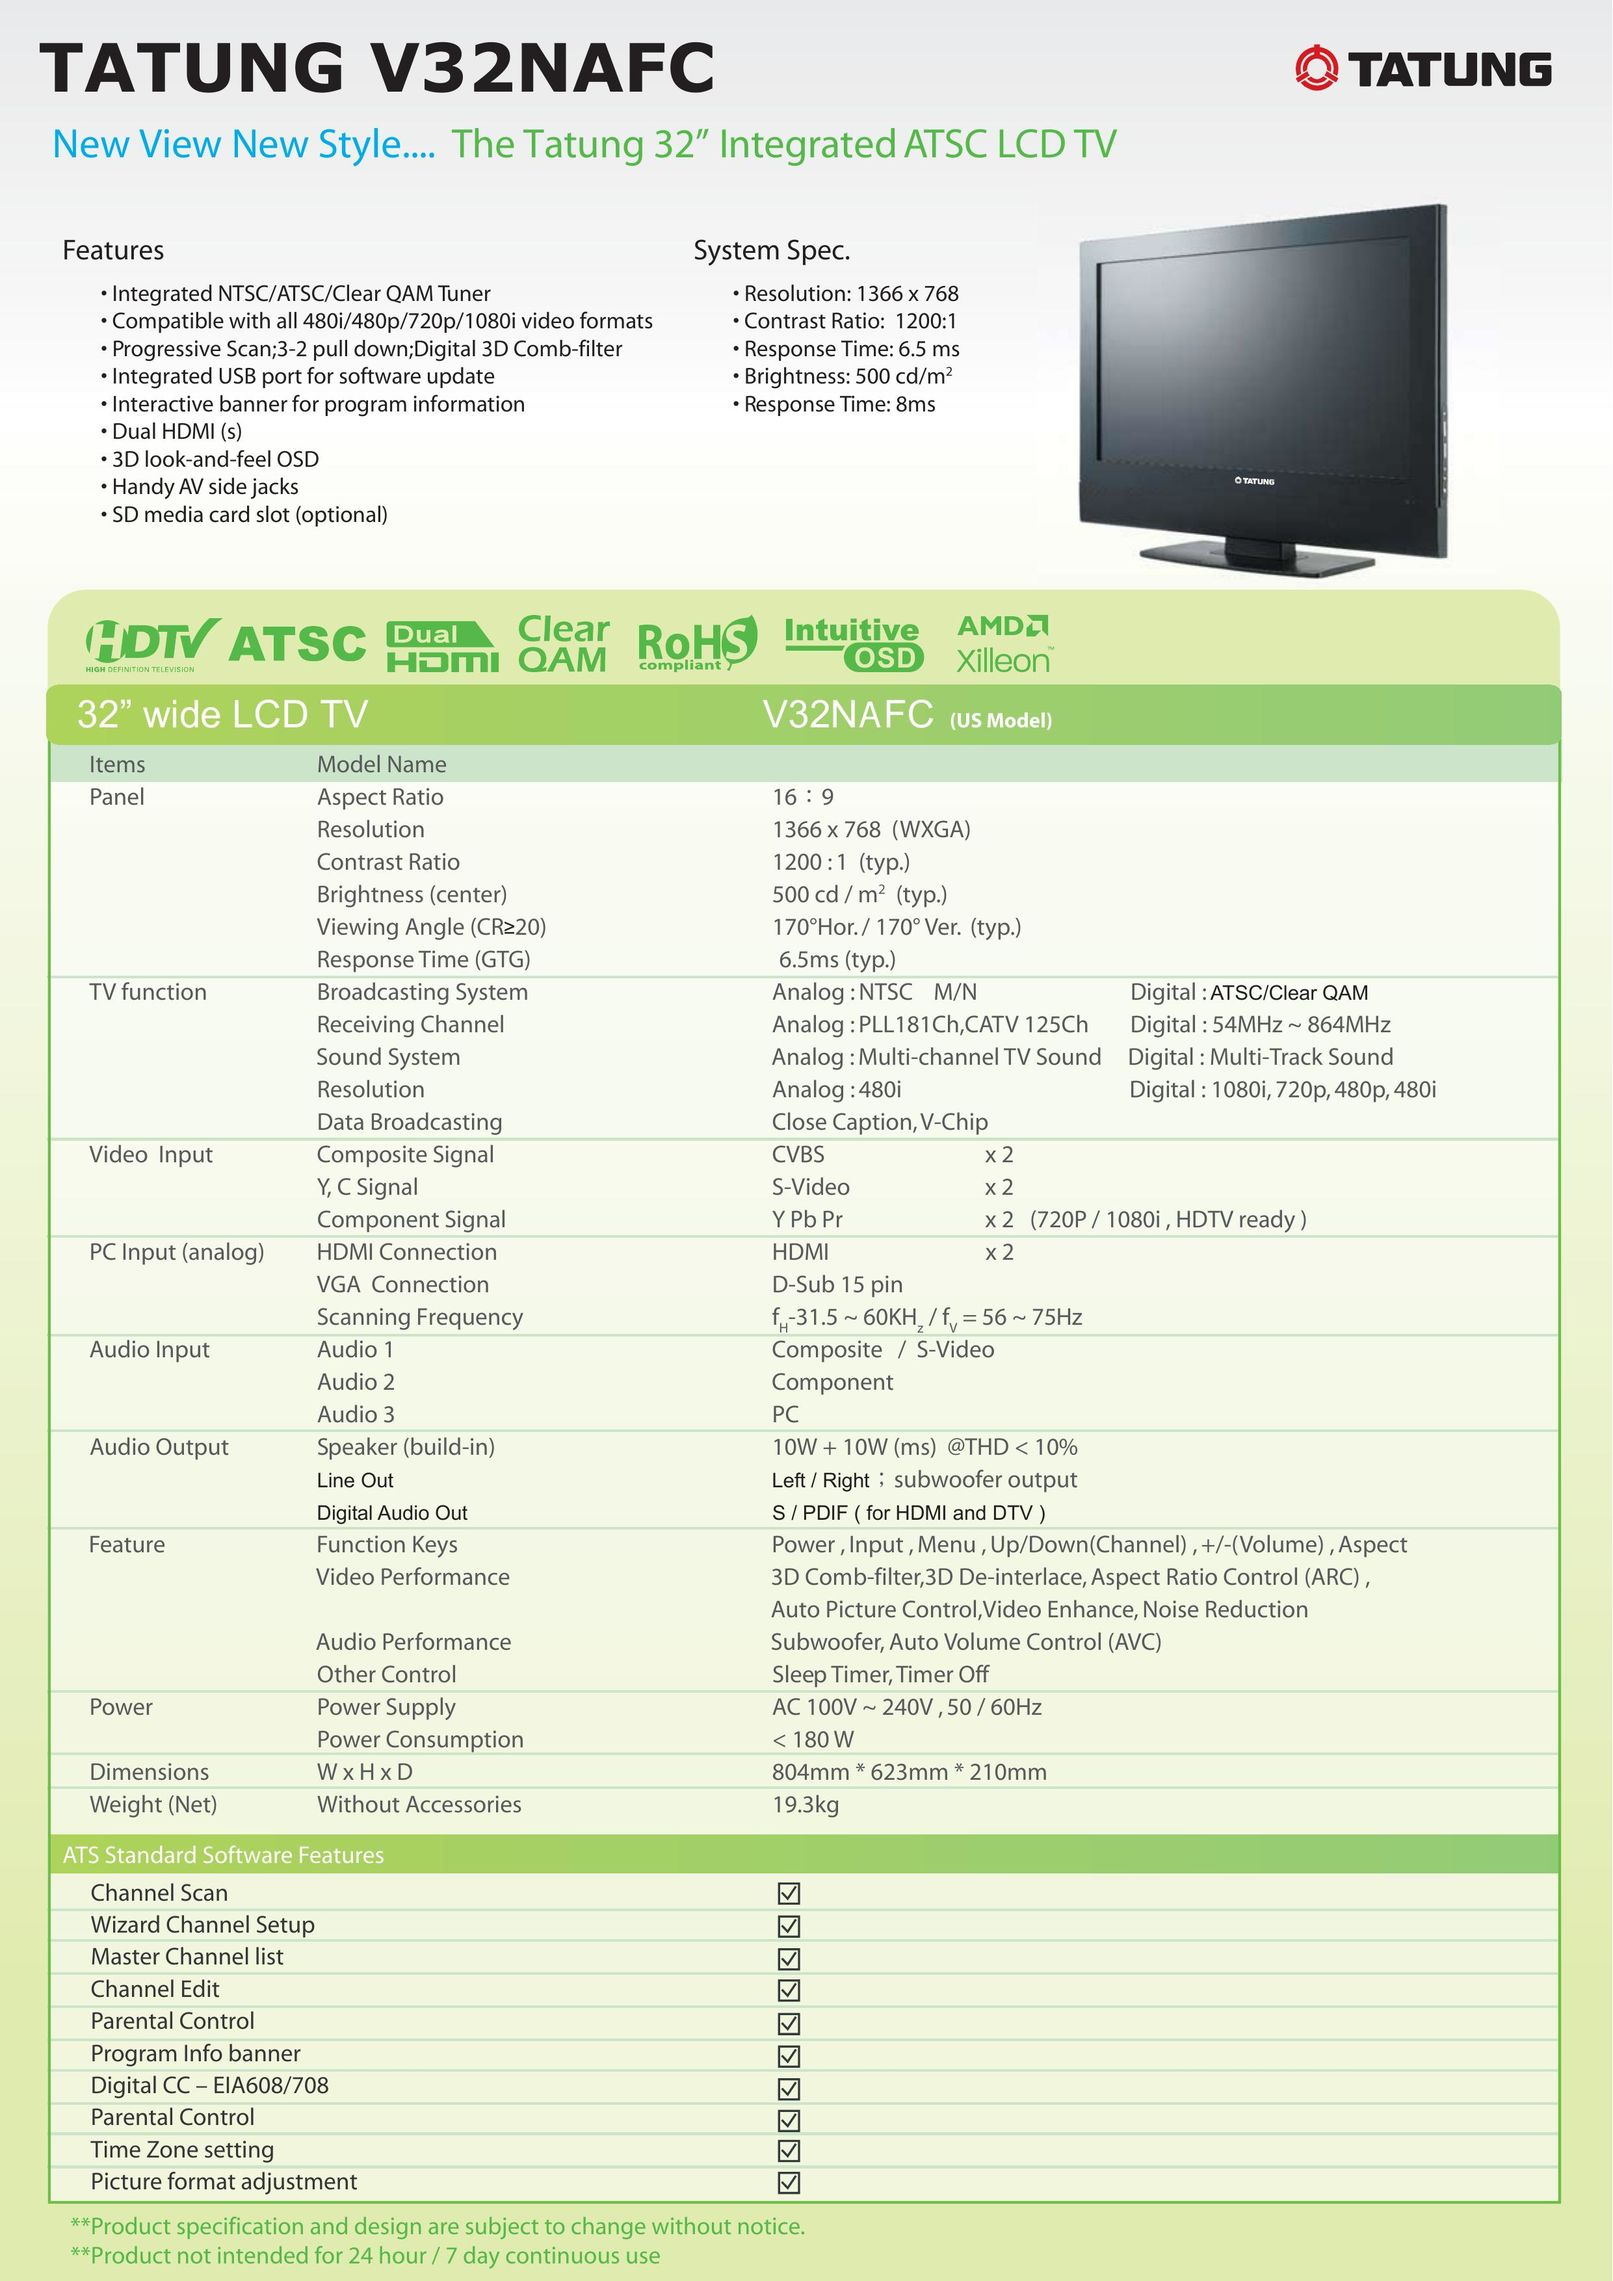 Tatung V32NAFC Flat Panel Television User Manual